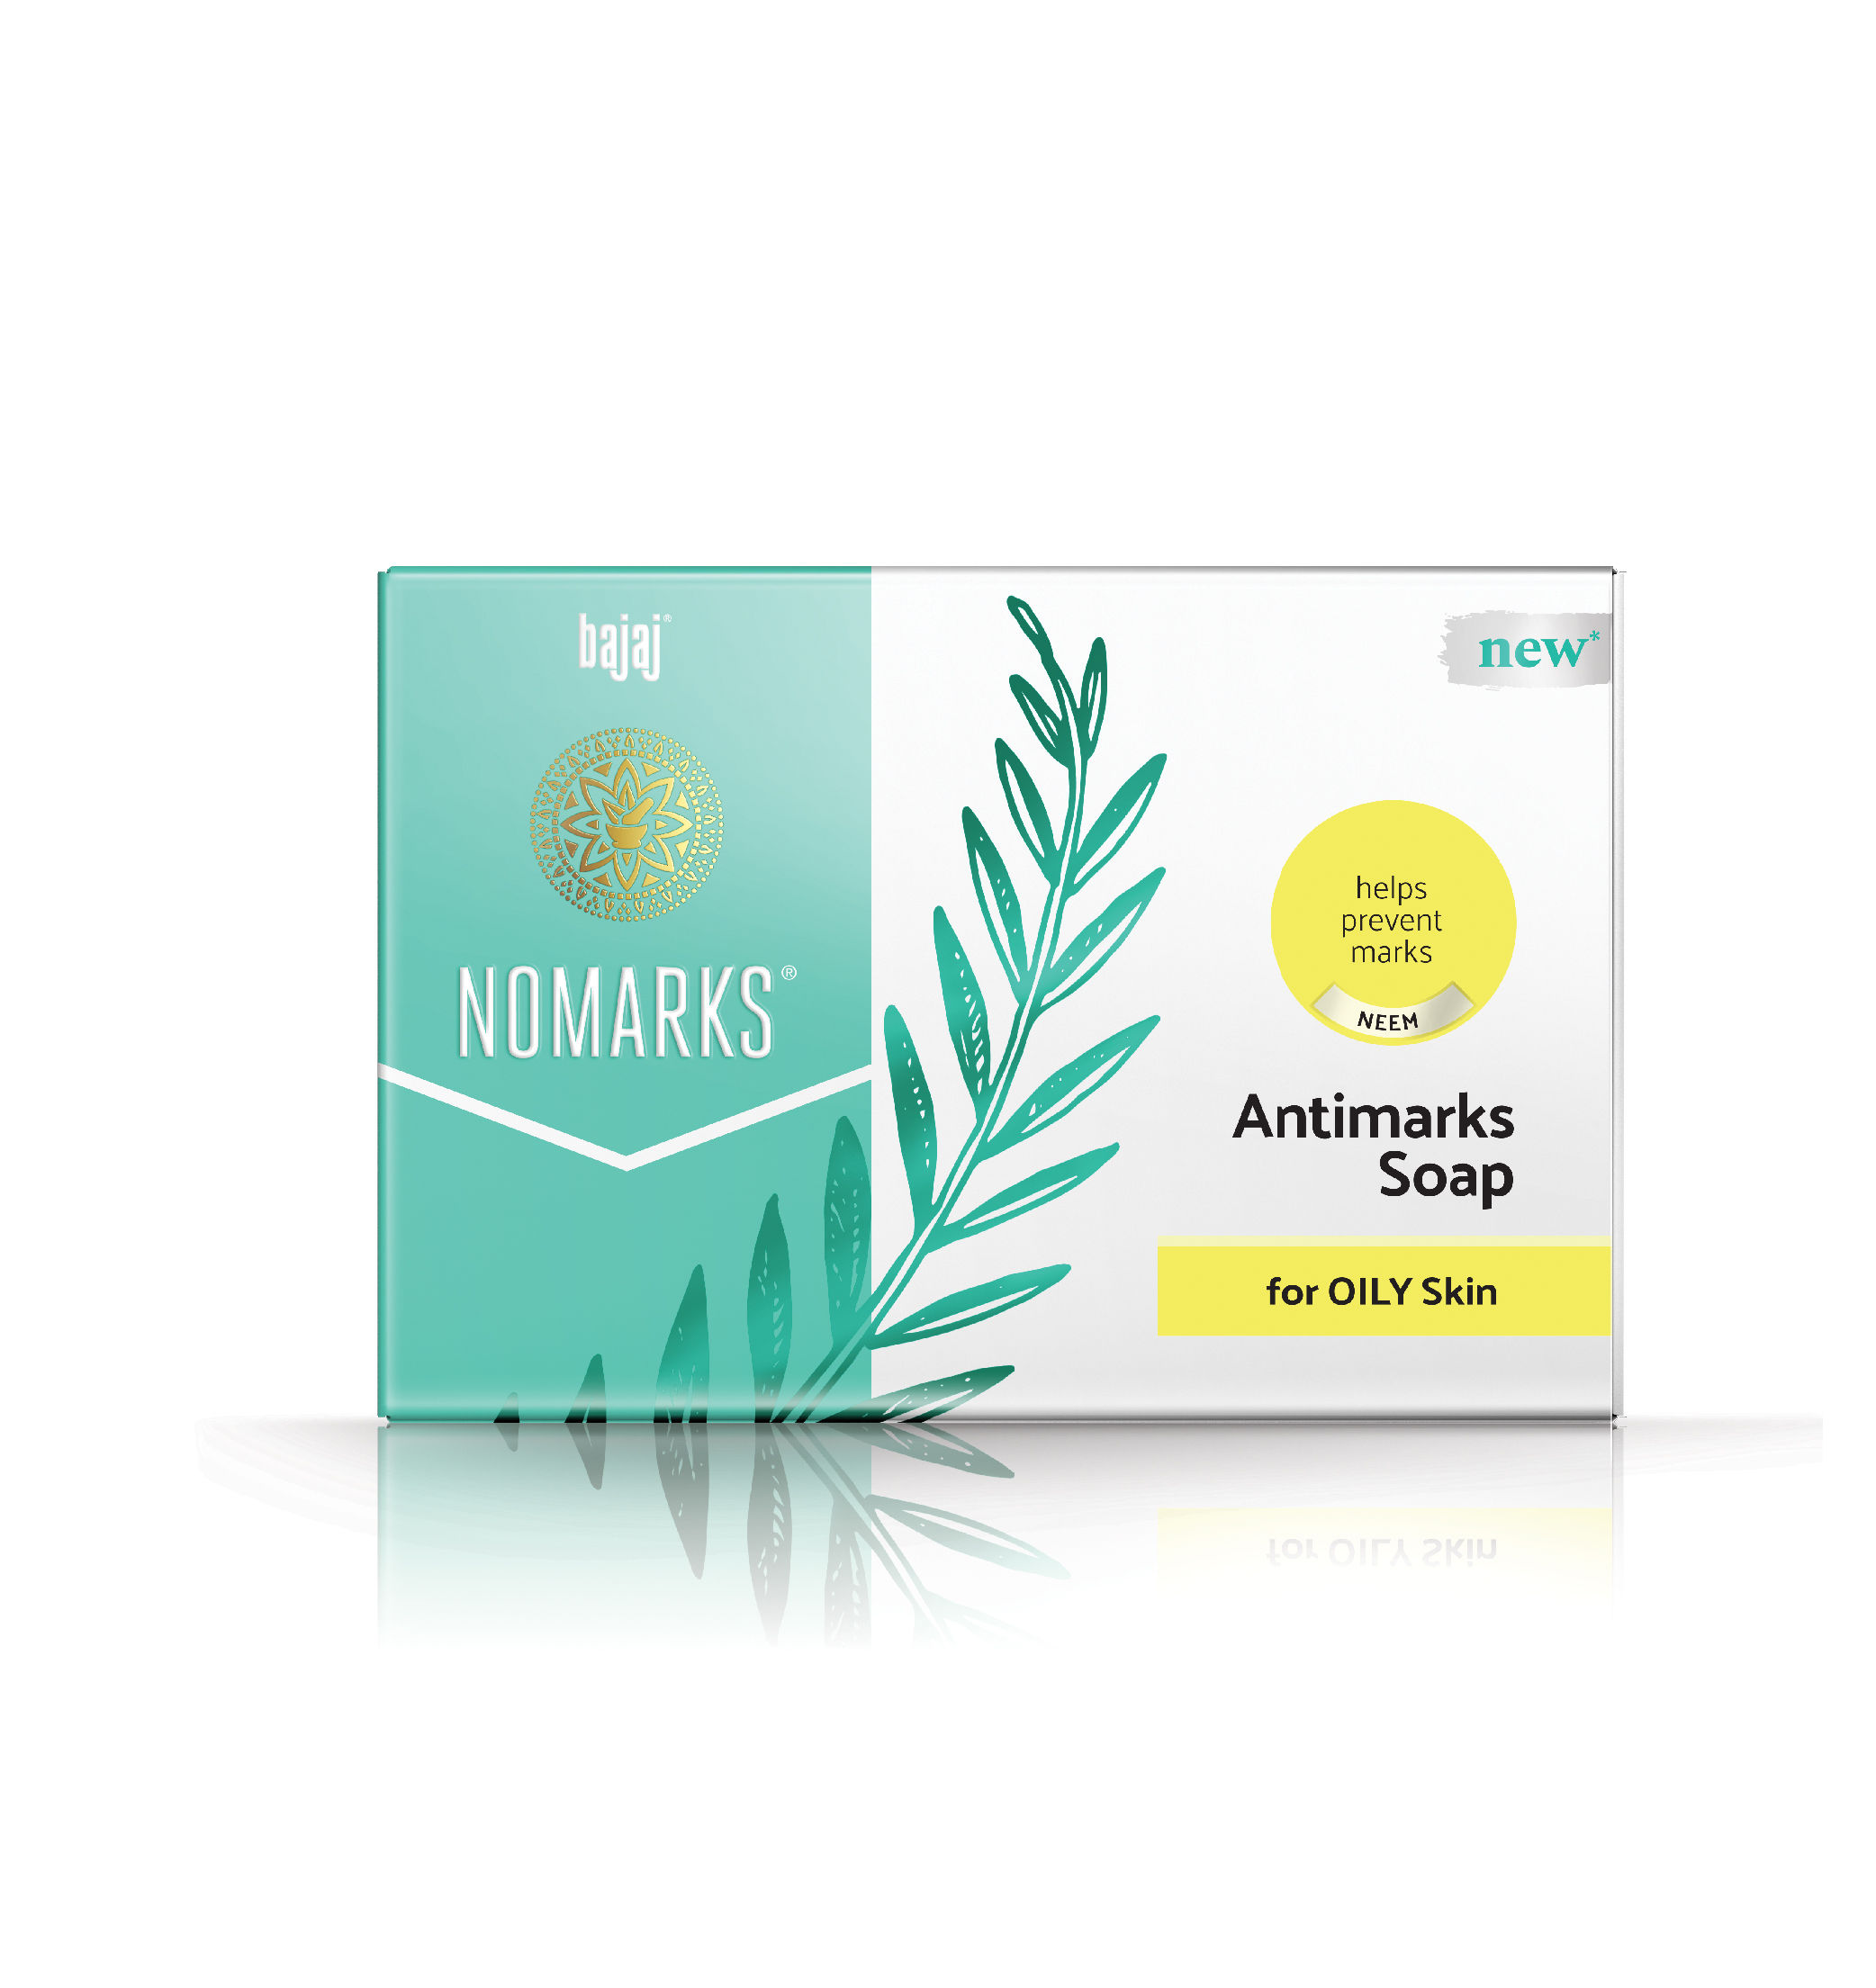 Bajaj Nomarks Antimarks Soap for Oily Skin